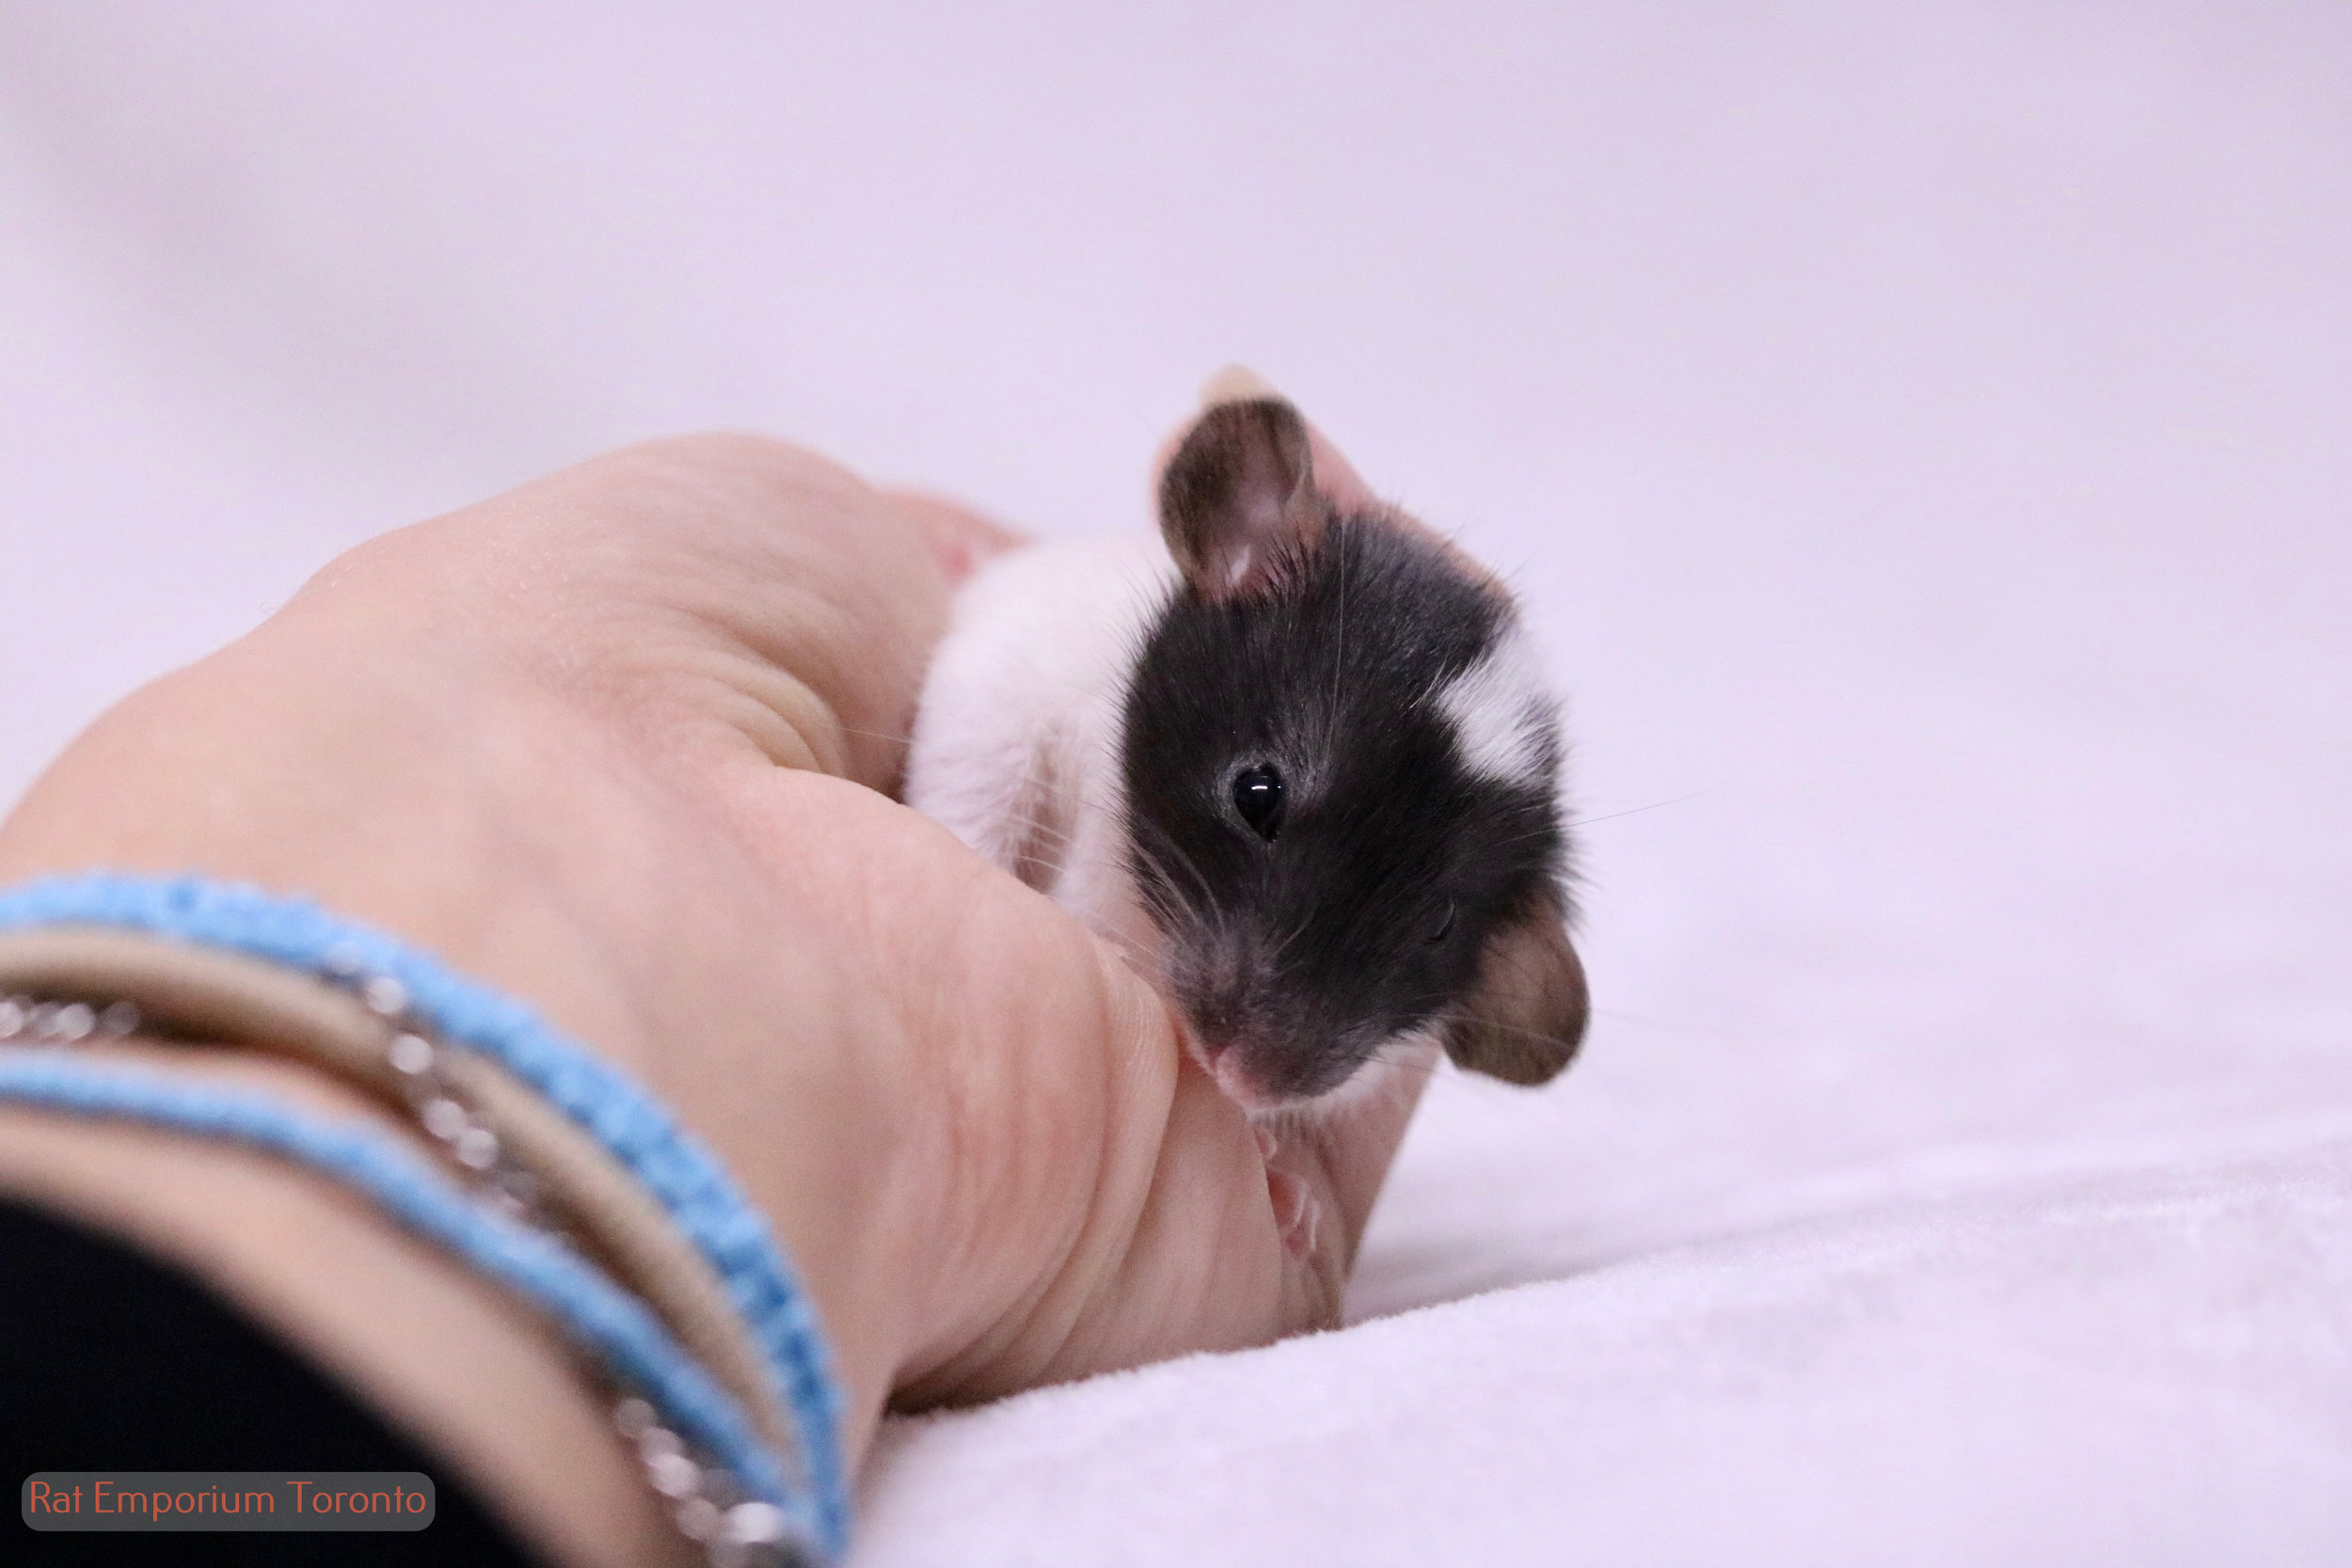 Adopt pet rats Toronto